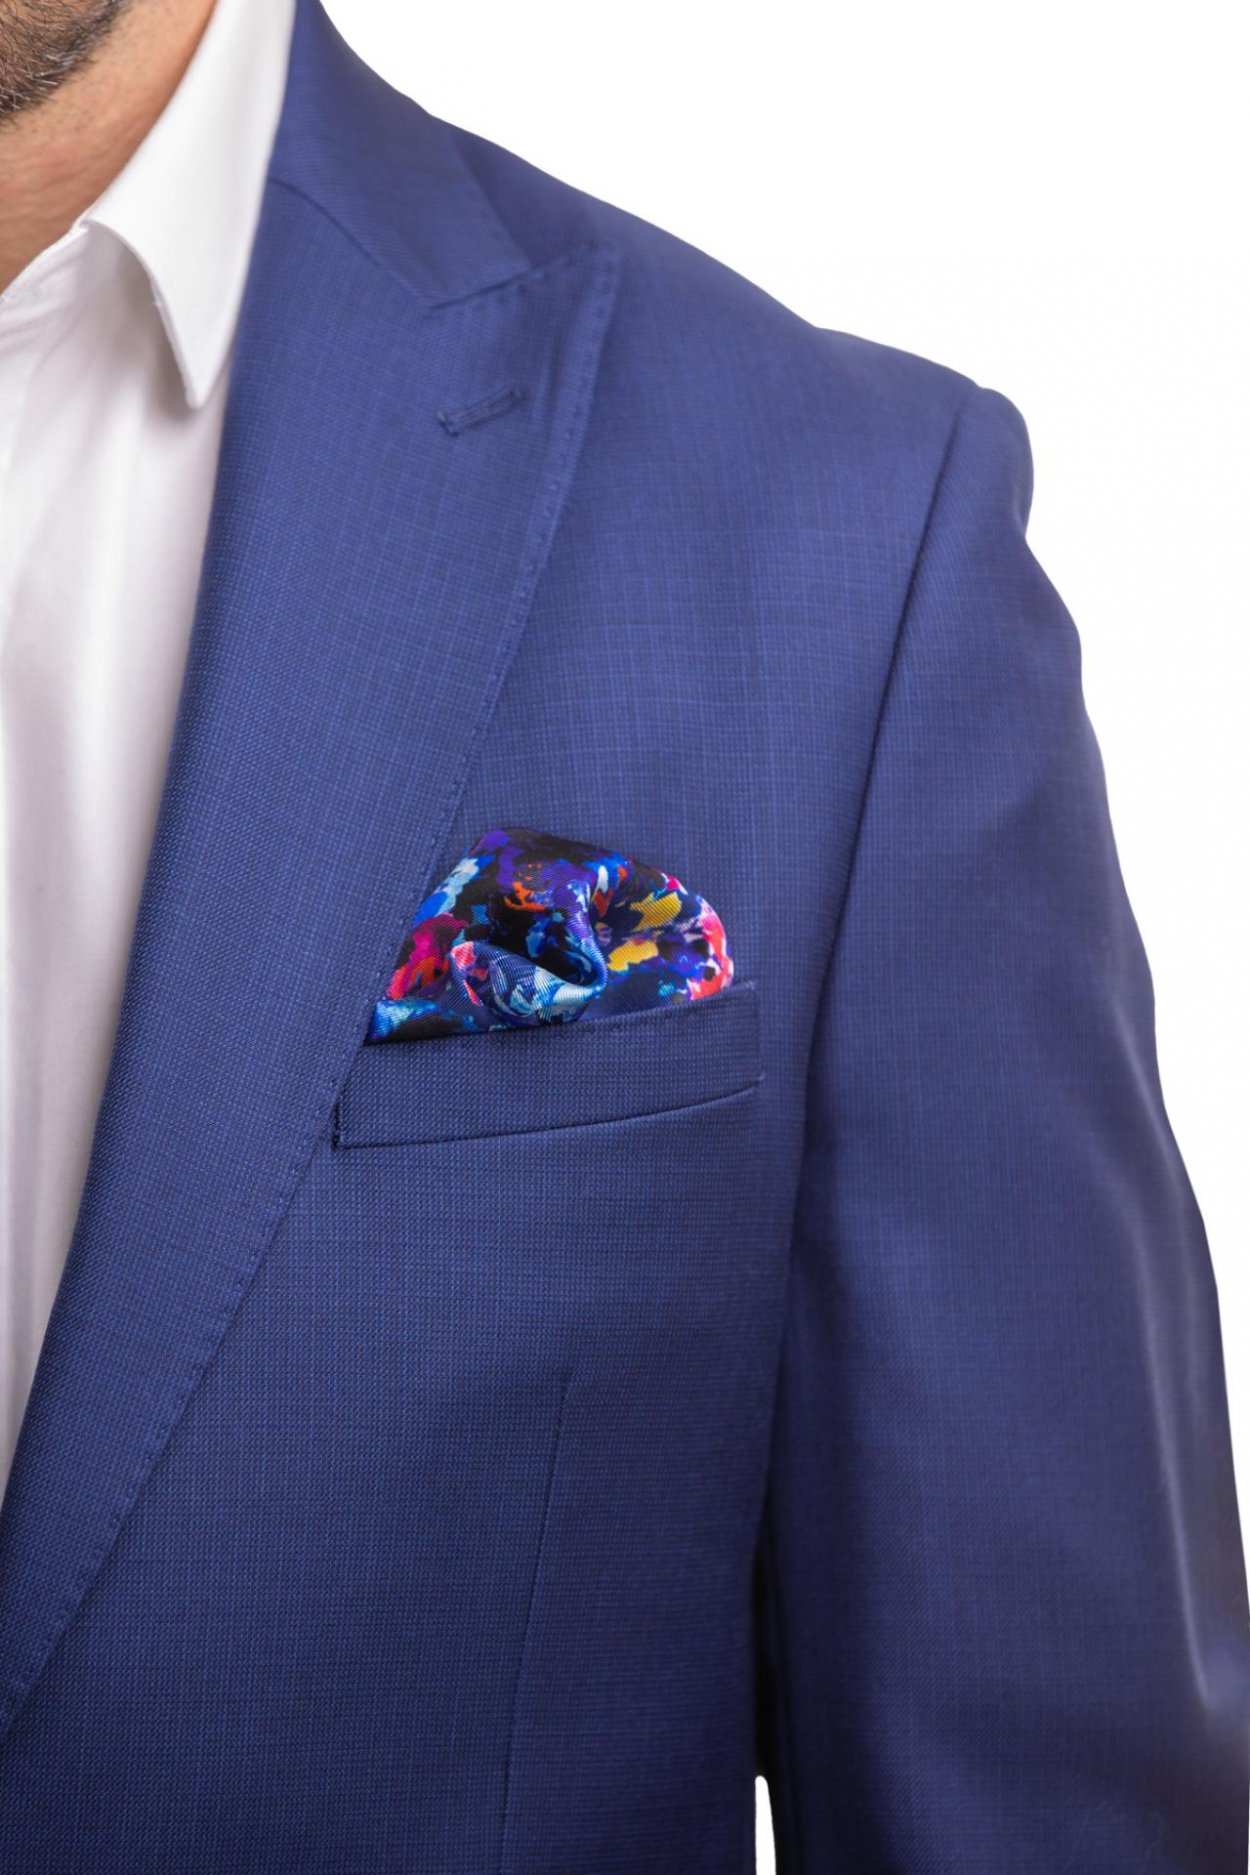 Modrý hedvábný kapesníček s květinovým vzorem